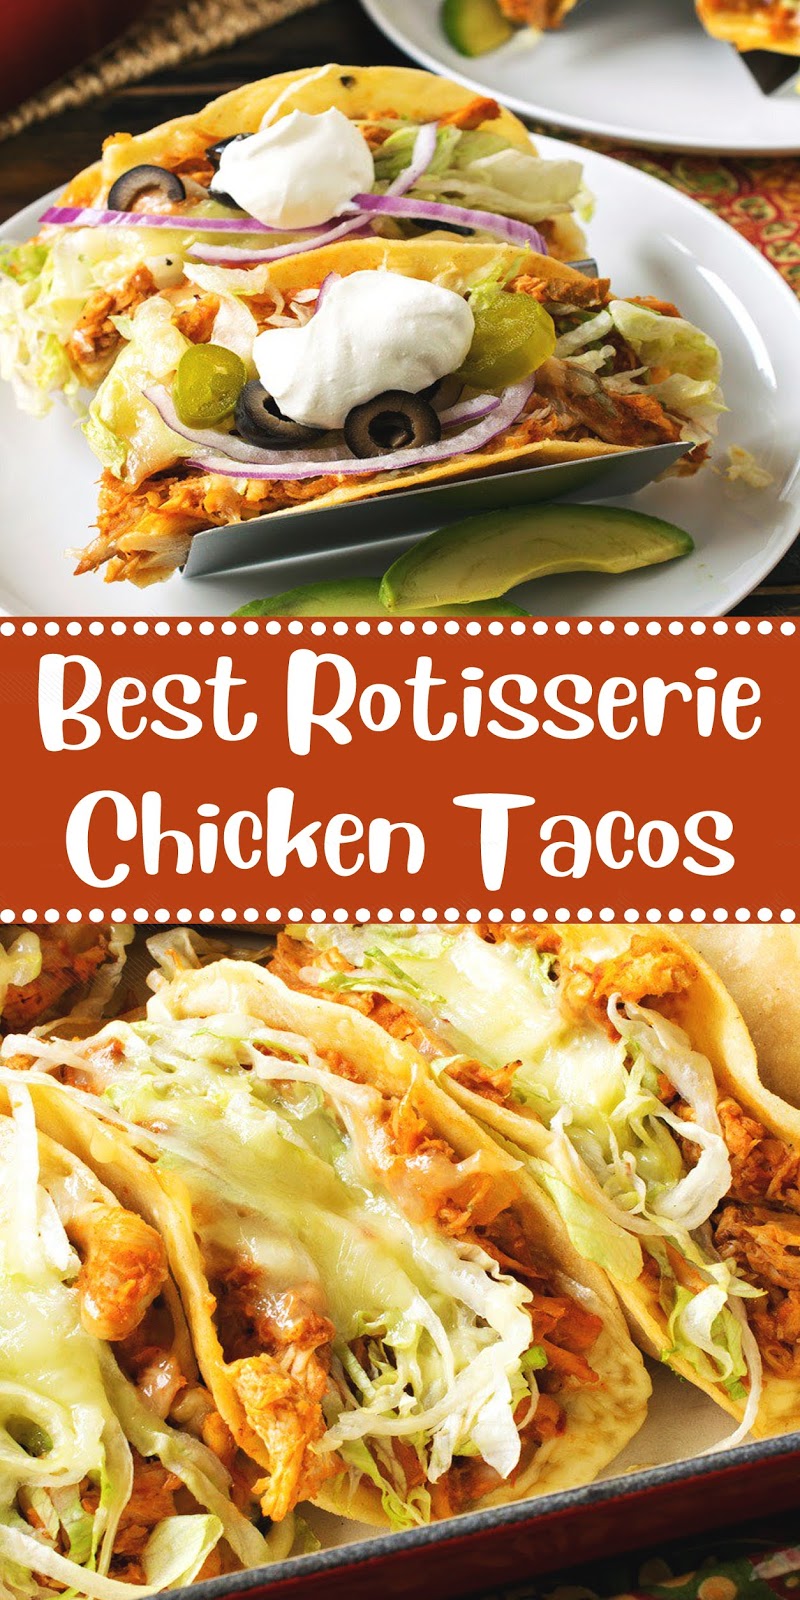 Best Rotisserie Chicken Tacos - 3 SECONDS